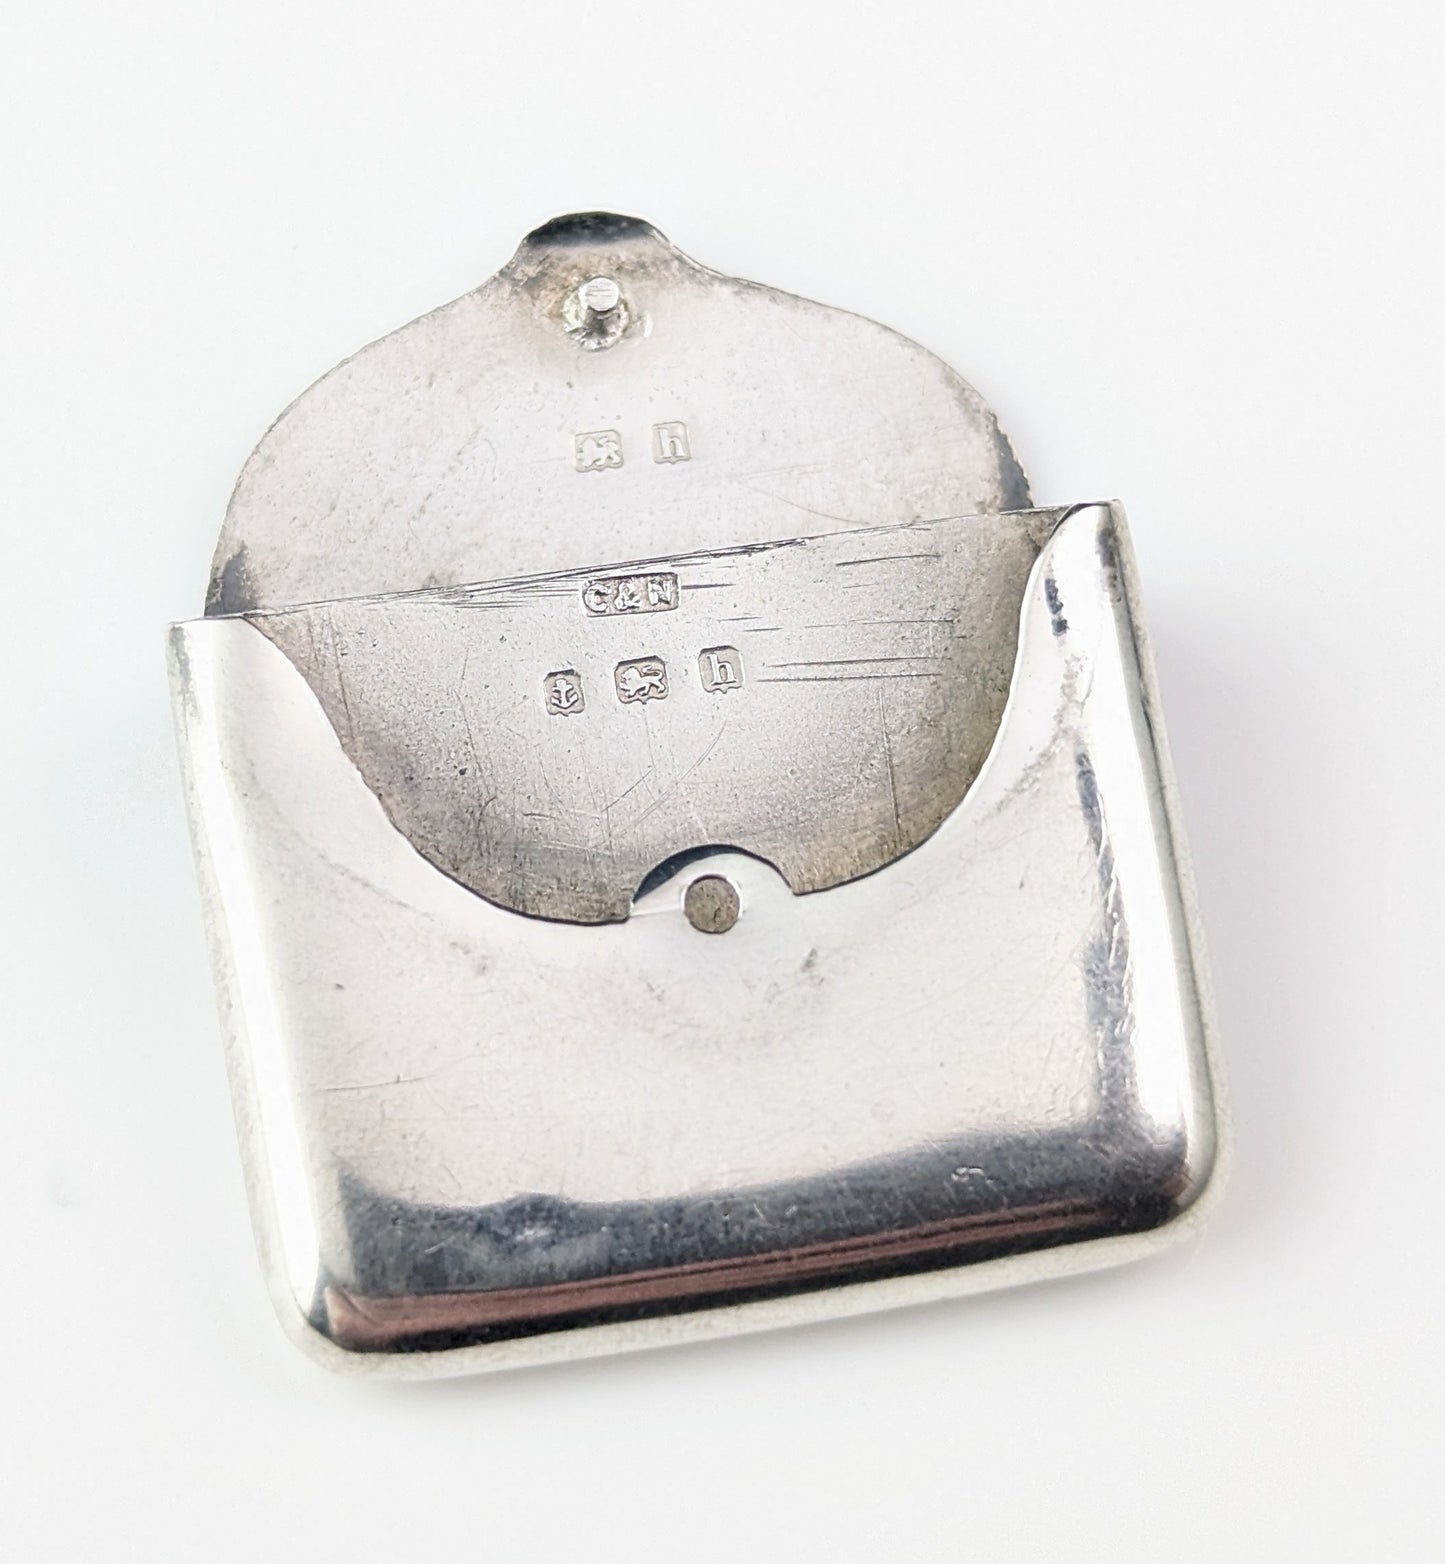 Antique Sterling silver stamp case pendant, Envelope, Edwardian